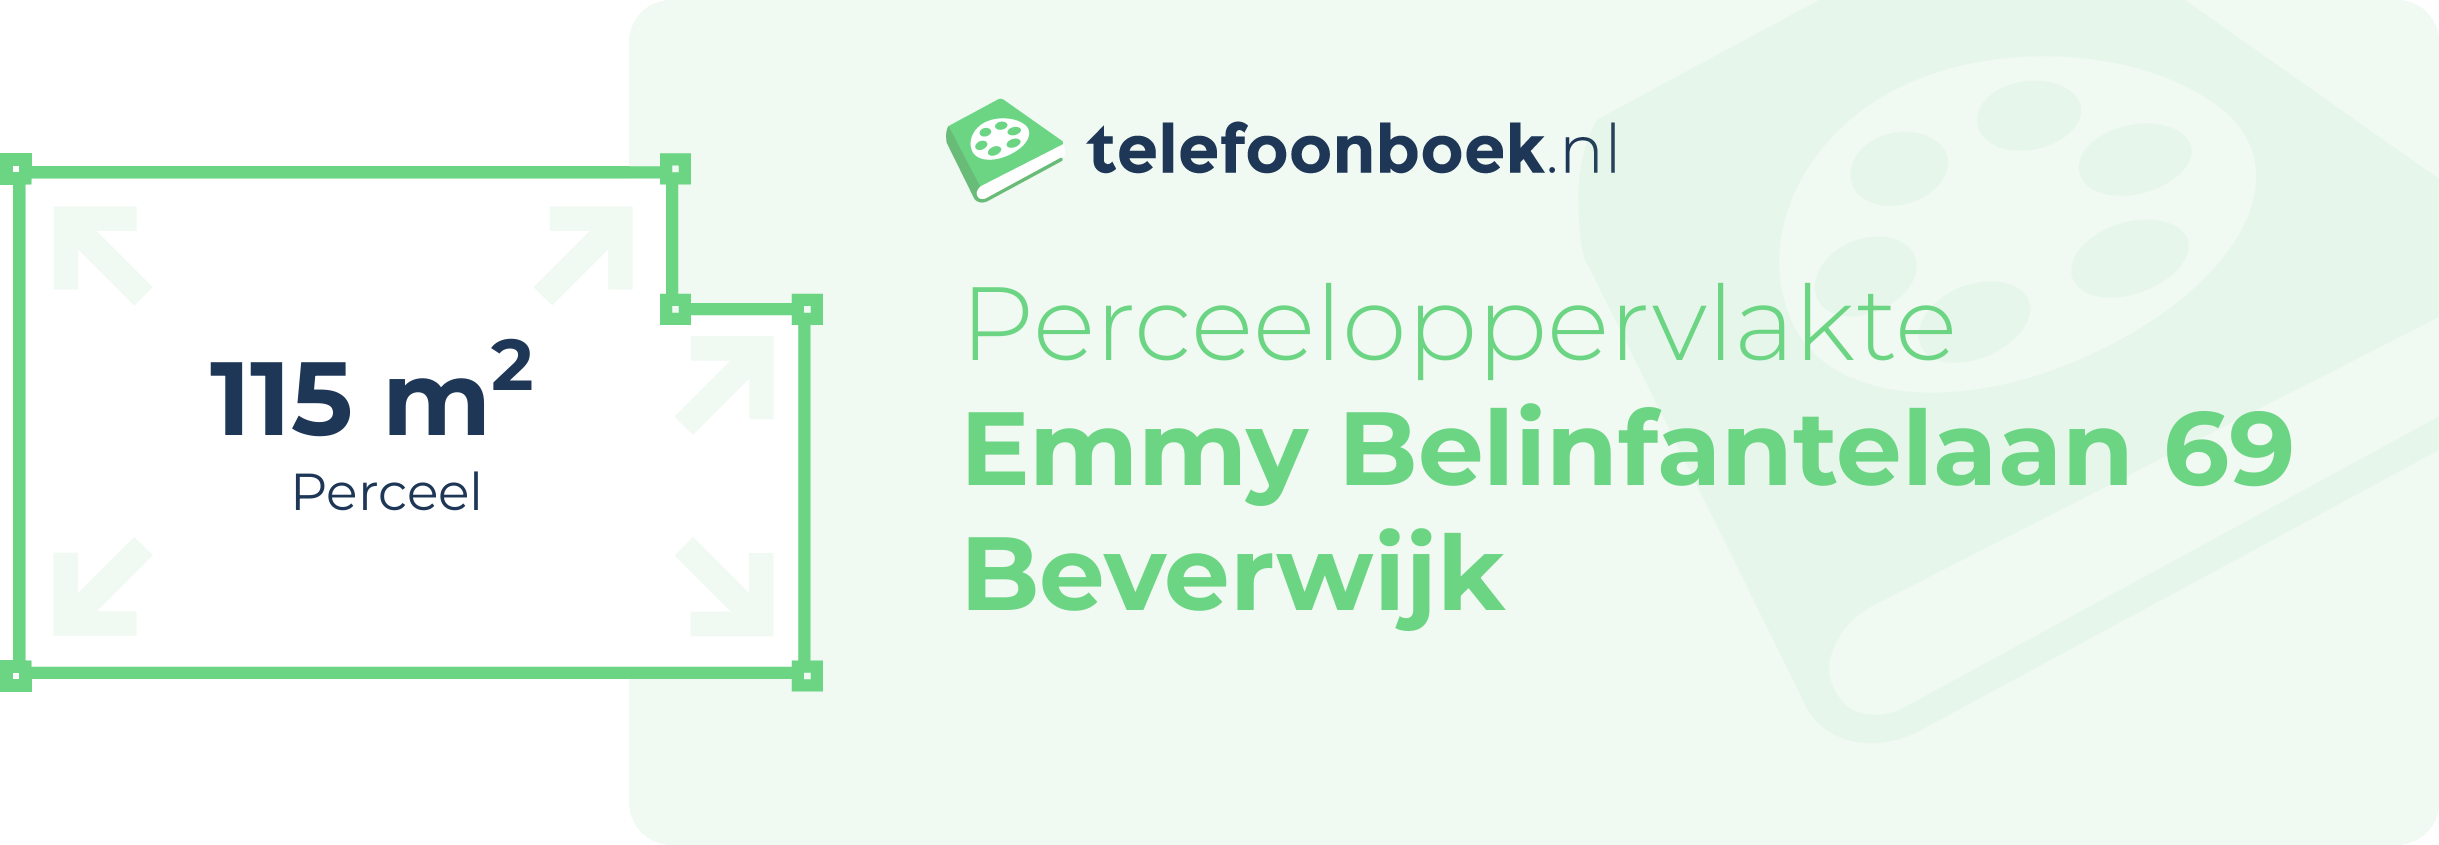 Perceeloppervlakte Emmy Belinfantelaan 69 Beverwijk